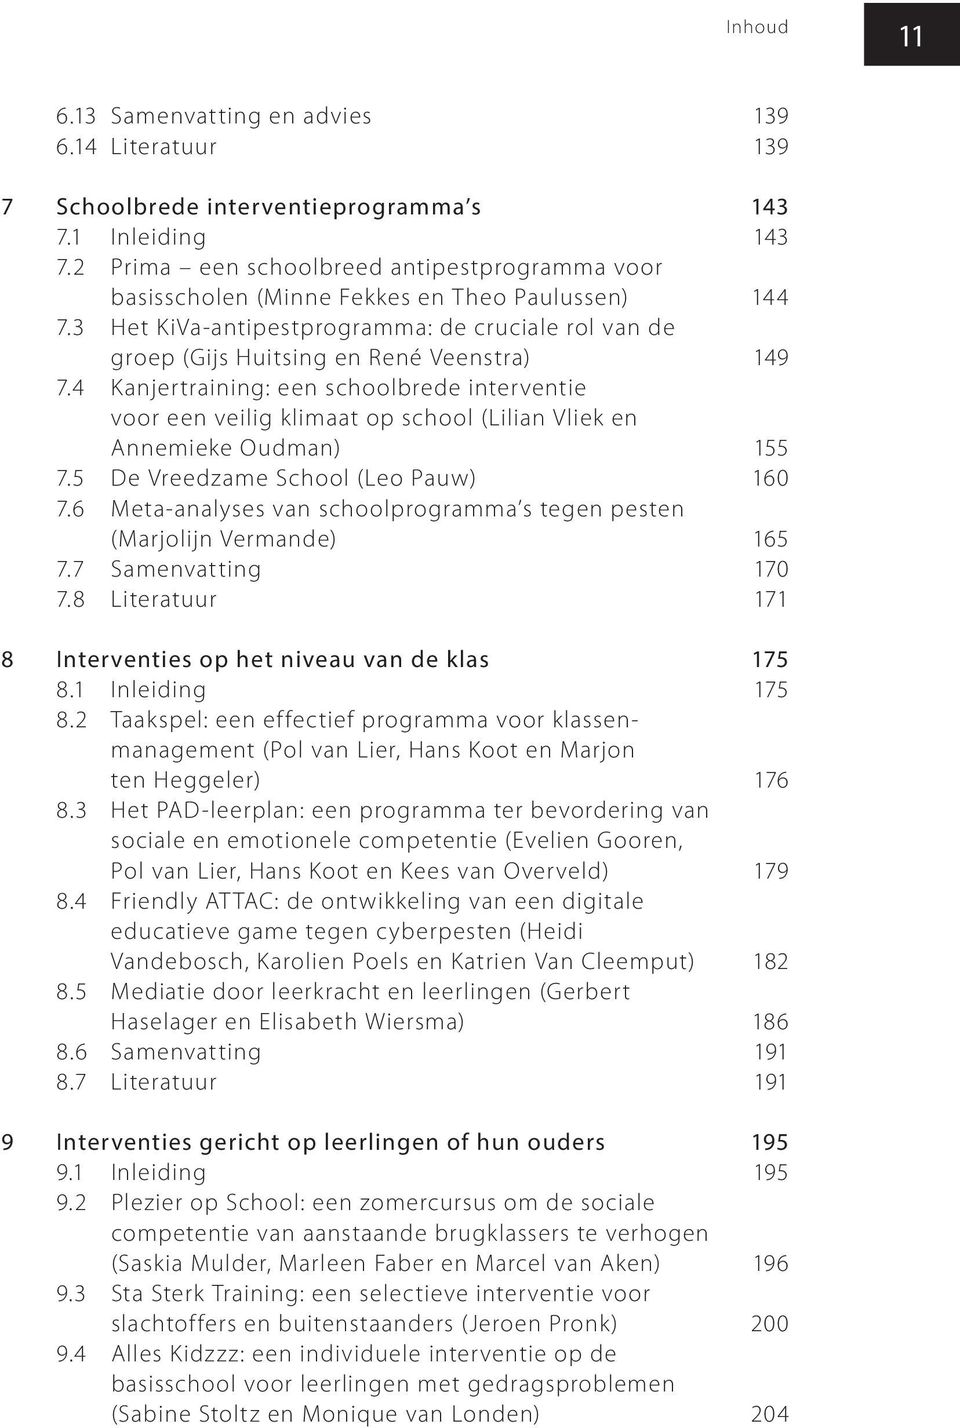 4 Kanjertraining: een schoolbrede interventie voor een veilig klimaat op school (Lilian Vliek en Annemieke Oudman) 155 7.5 De Vreedzame School (Leo Pauw) 160 7.